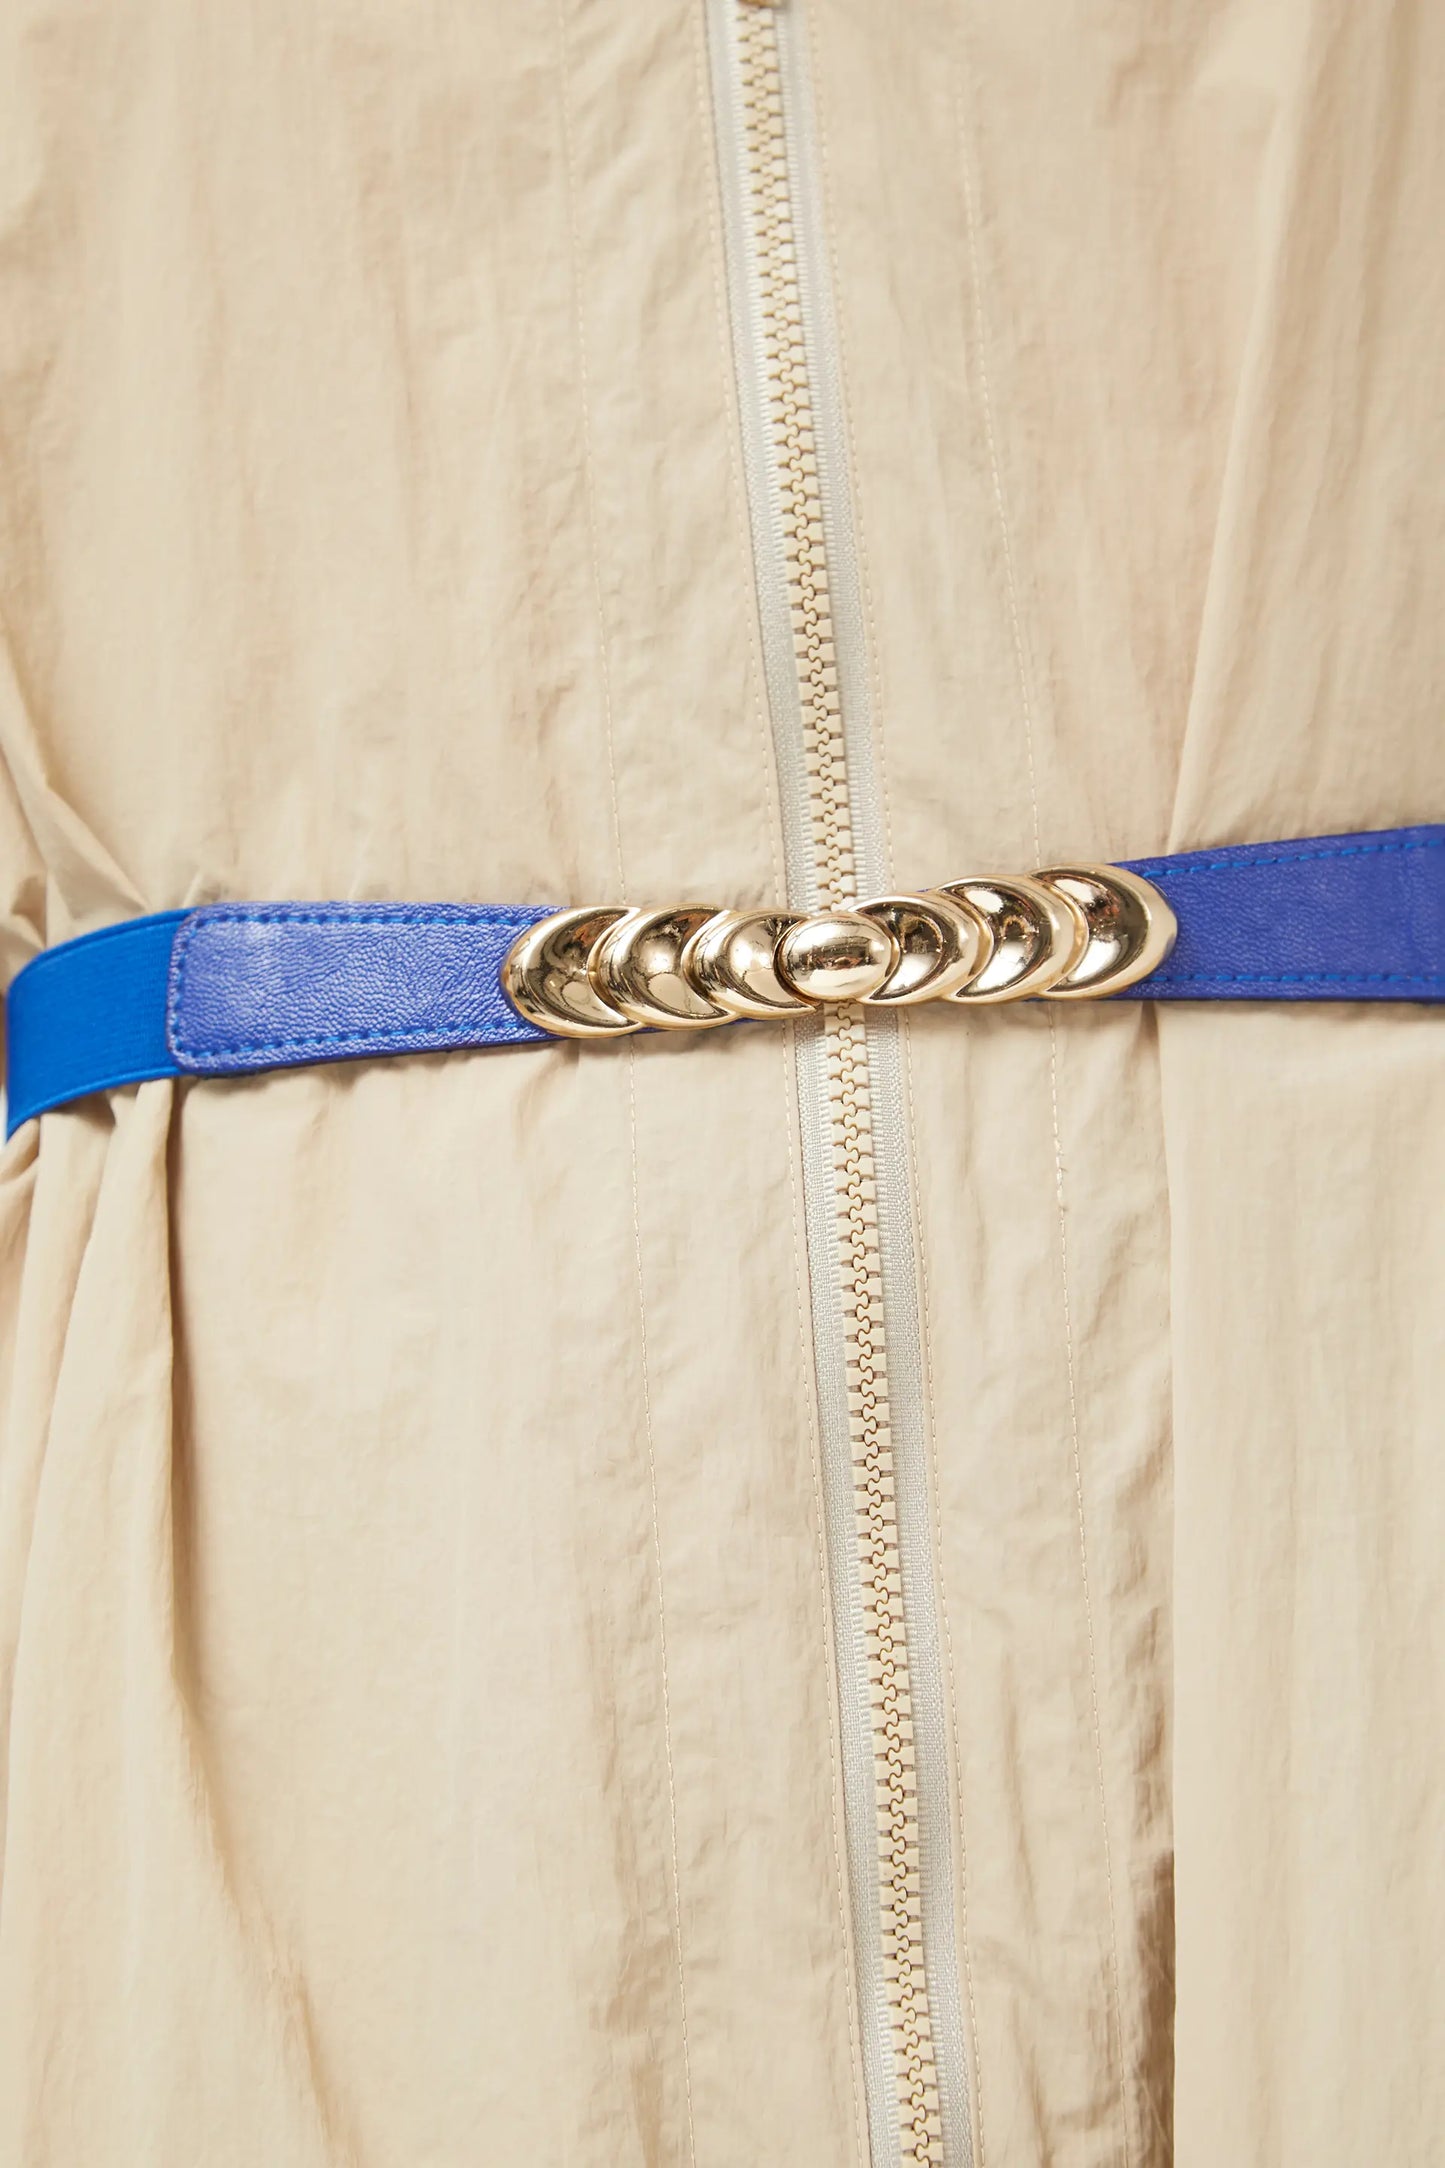 Cinturón hebilla ovalada azul